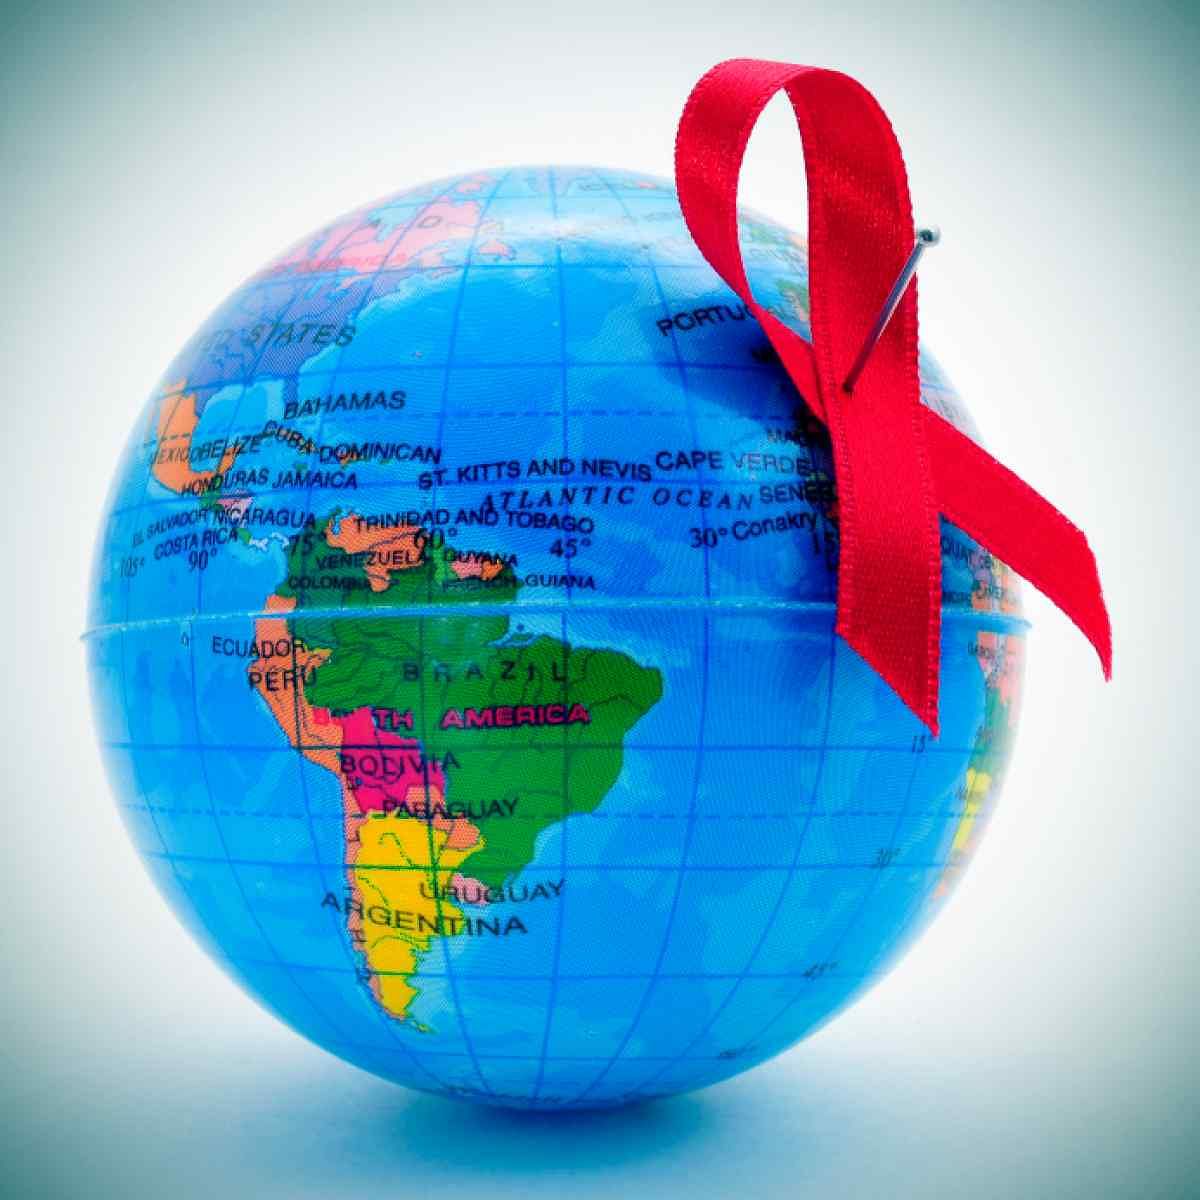 हर साल HIV-AIDS के लाखों नए मामले सामने आते हैं.